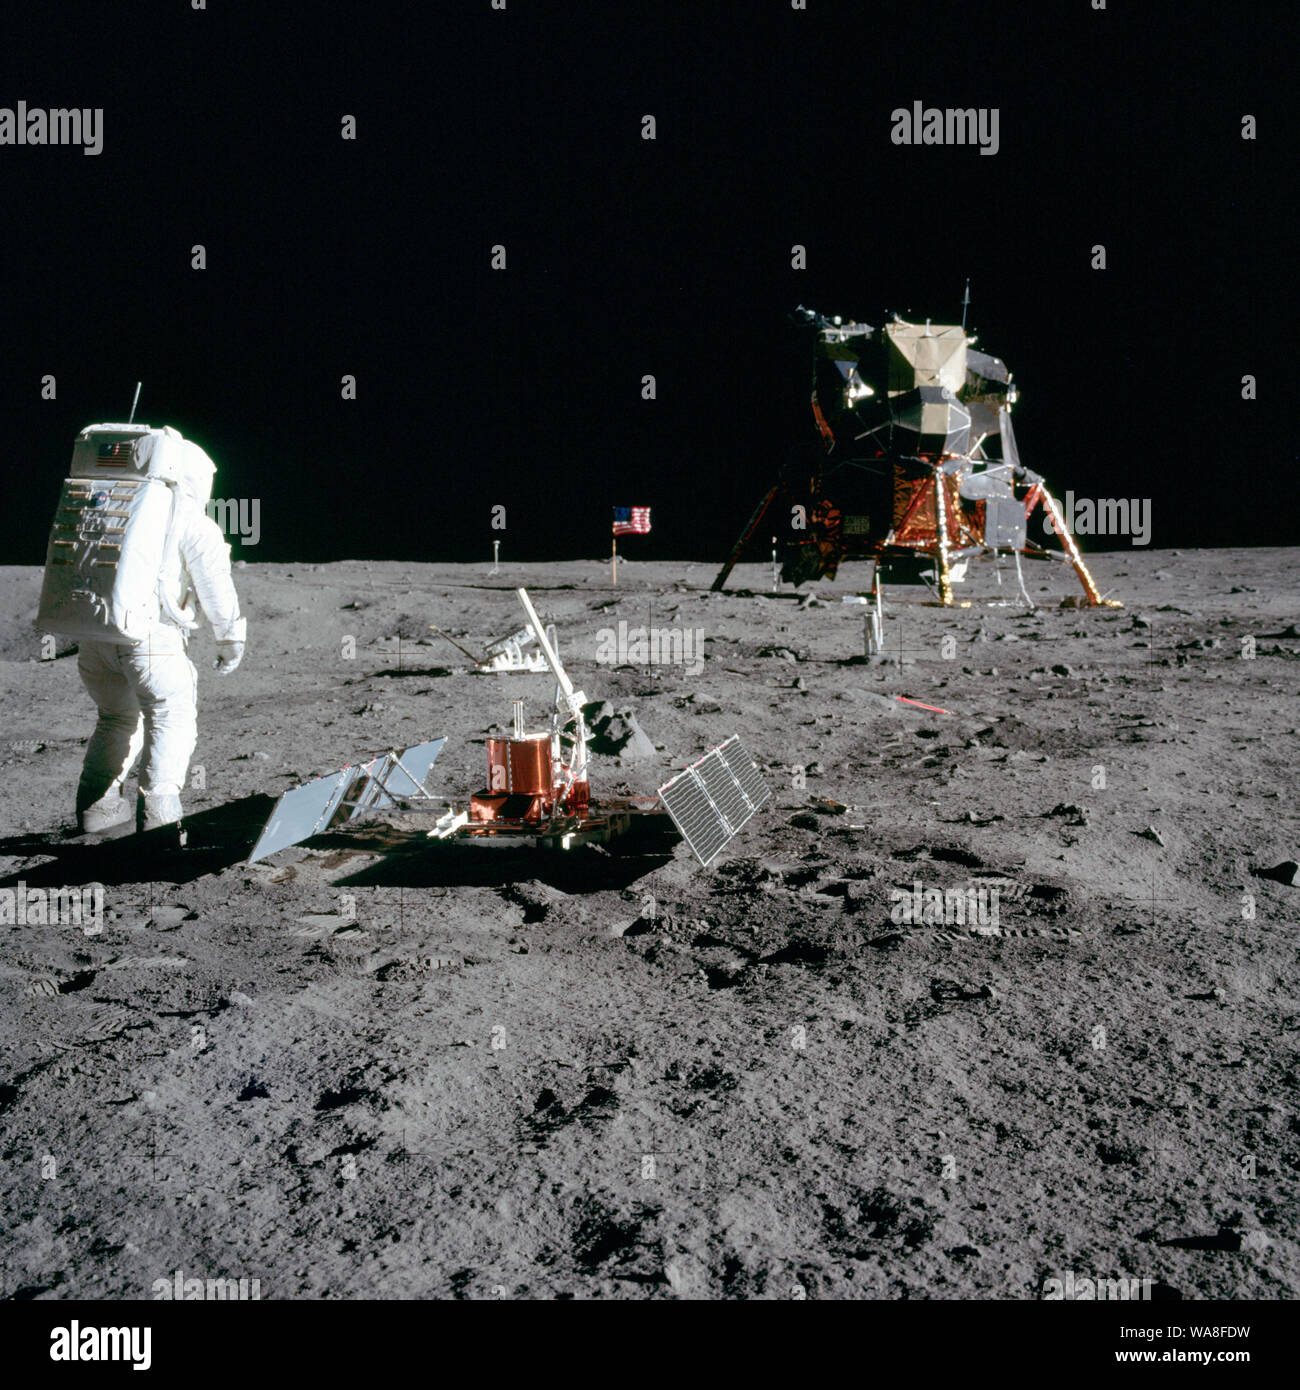 L'astronaute Edwin E. Aldrin Jr.' Buzz, pilote du module lunaire, est photographié au cours de l'activité extravéhiculaire Apollo 11 sur la Lune. Il a déployé les premières expériences scientifiques Apollo Package (EASEP). Au premier plan est l'expérience sismique passive (SPPC) ; au-delà c'est la Laser Ranging Retro-Reflector (LR-3) ; dans le centre historique est le drapeau des États-Unis ; à gauche, en arrière-plan est le noir et blanc de la surface lunaire, de caméras de télévision dans le contexte d'extrême droite est le module lunaire "Eagle". L'astronaute Neil A. Armstrong, commandant, a pris cette photographie avec un 70mm s lunaire Banque D'Images